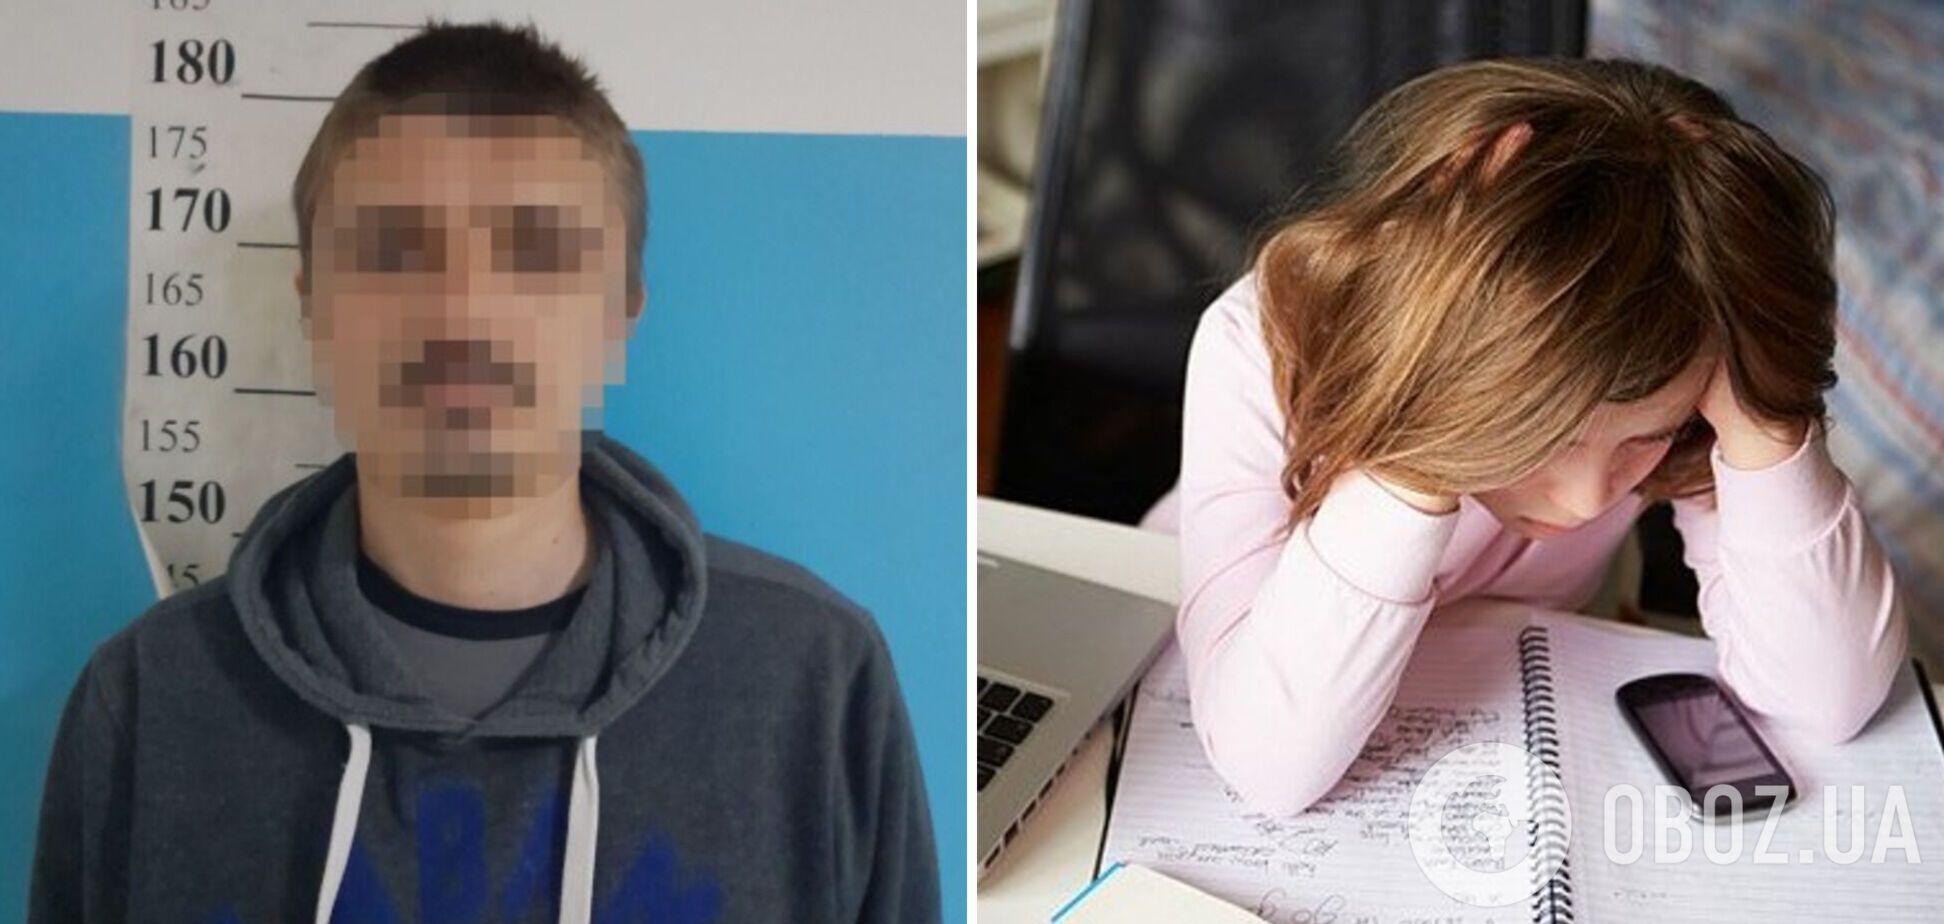 В Киеве задержали мужчину, предлагавшего интим 10-летней девочке. Фото